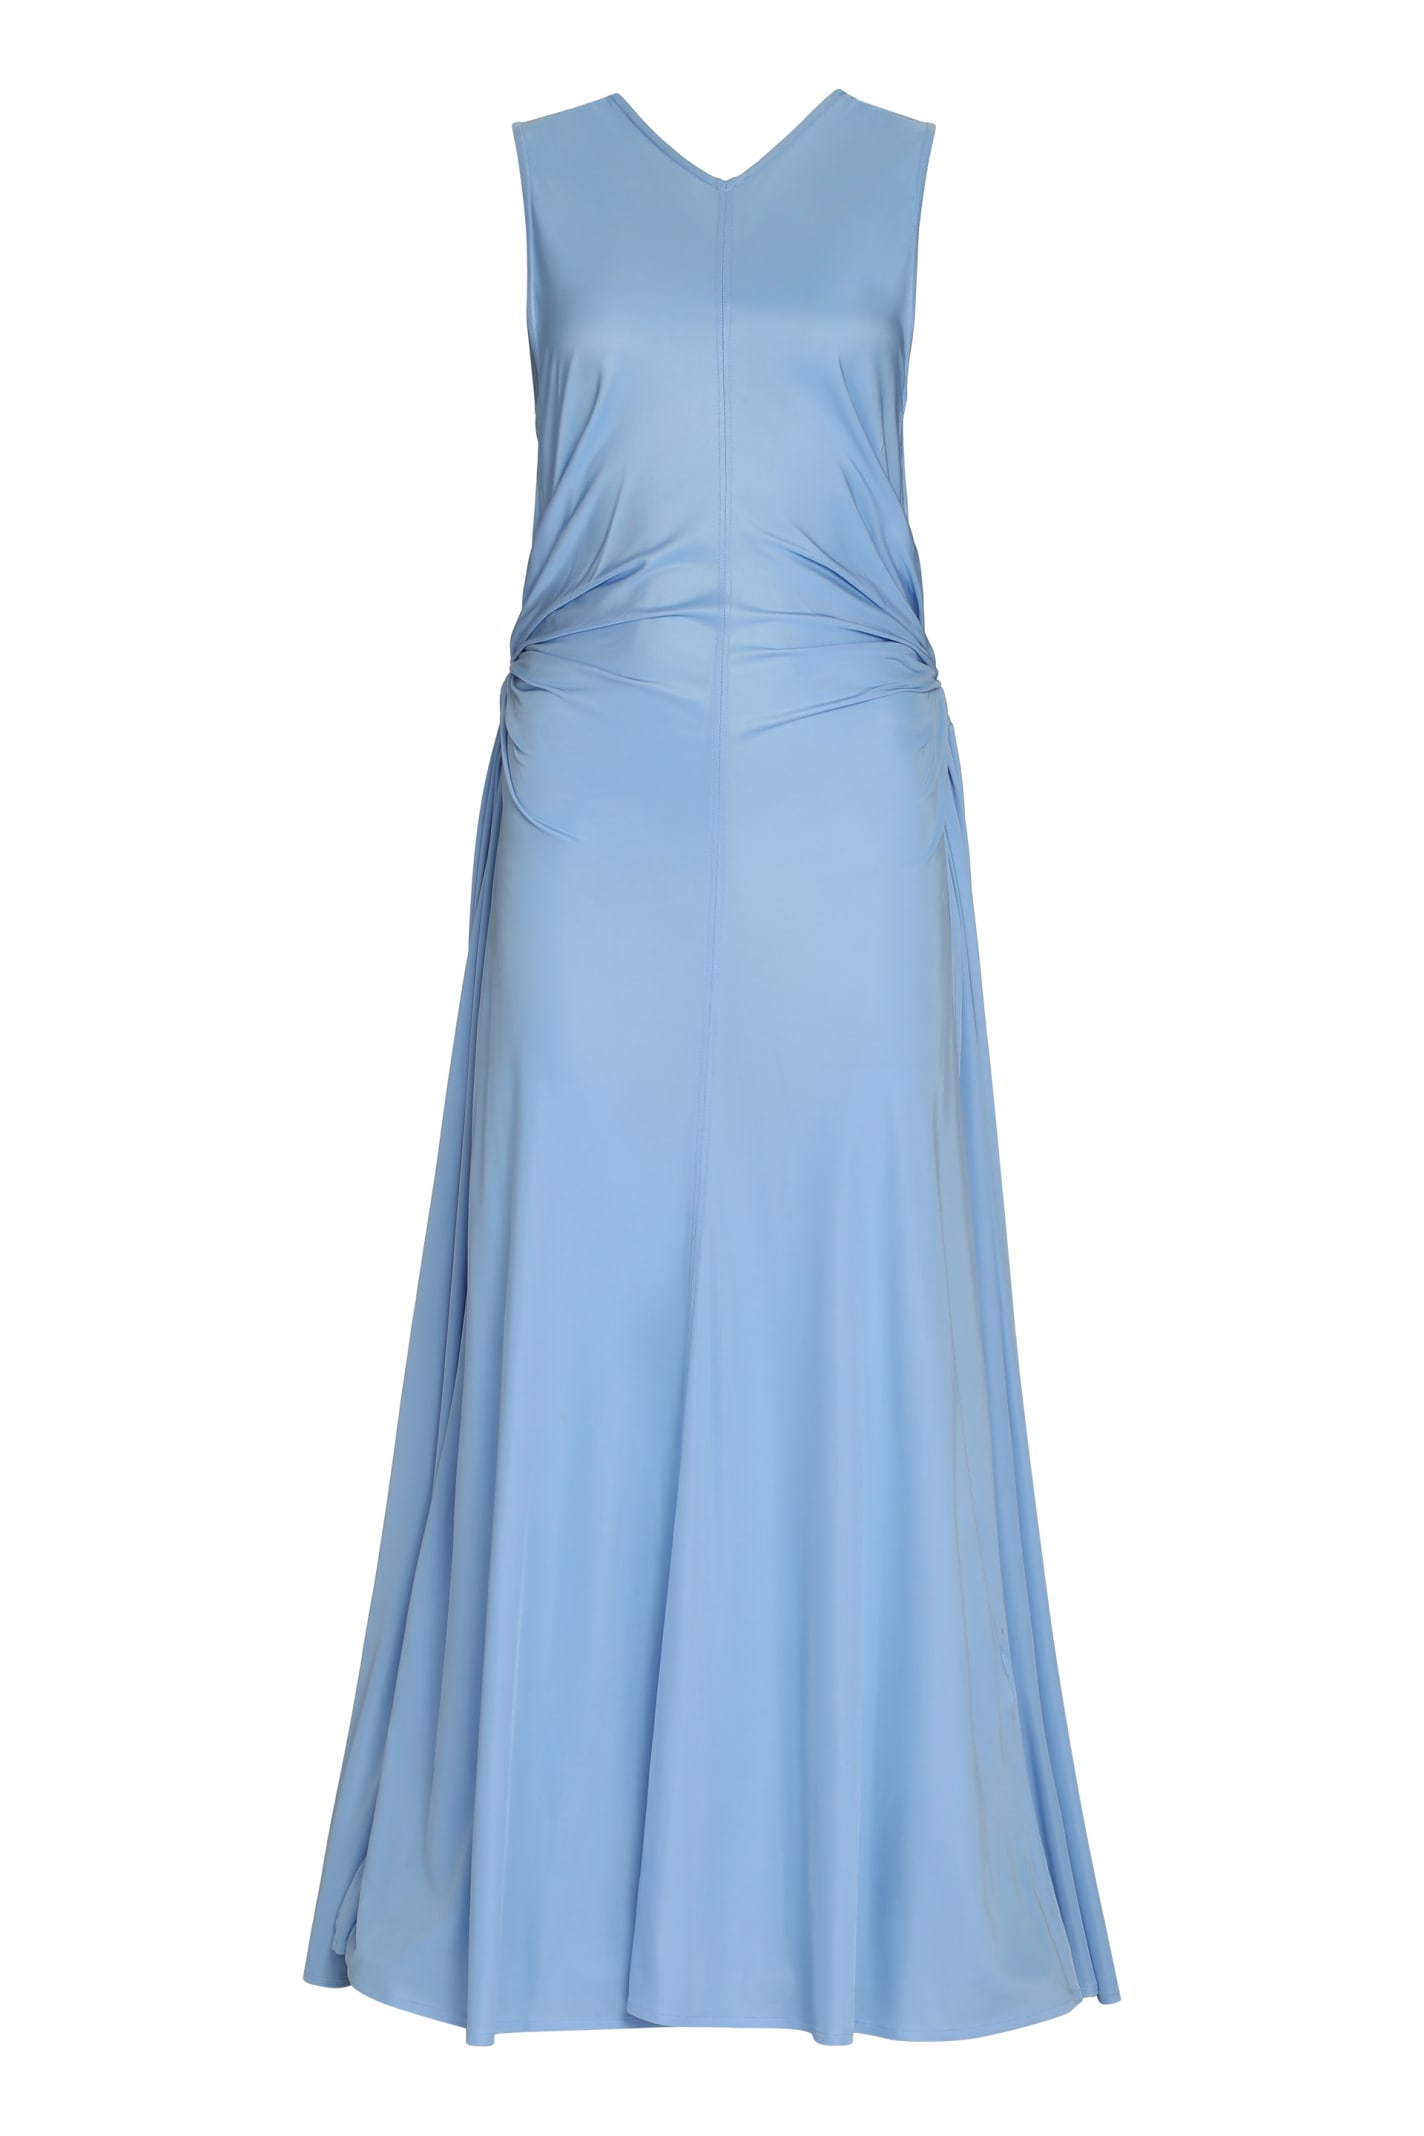 Bottega Veneta Jersey Dress In Light Blue